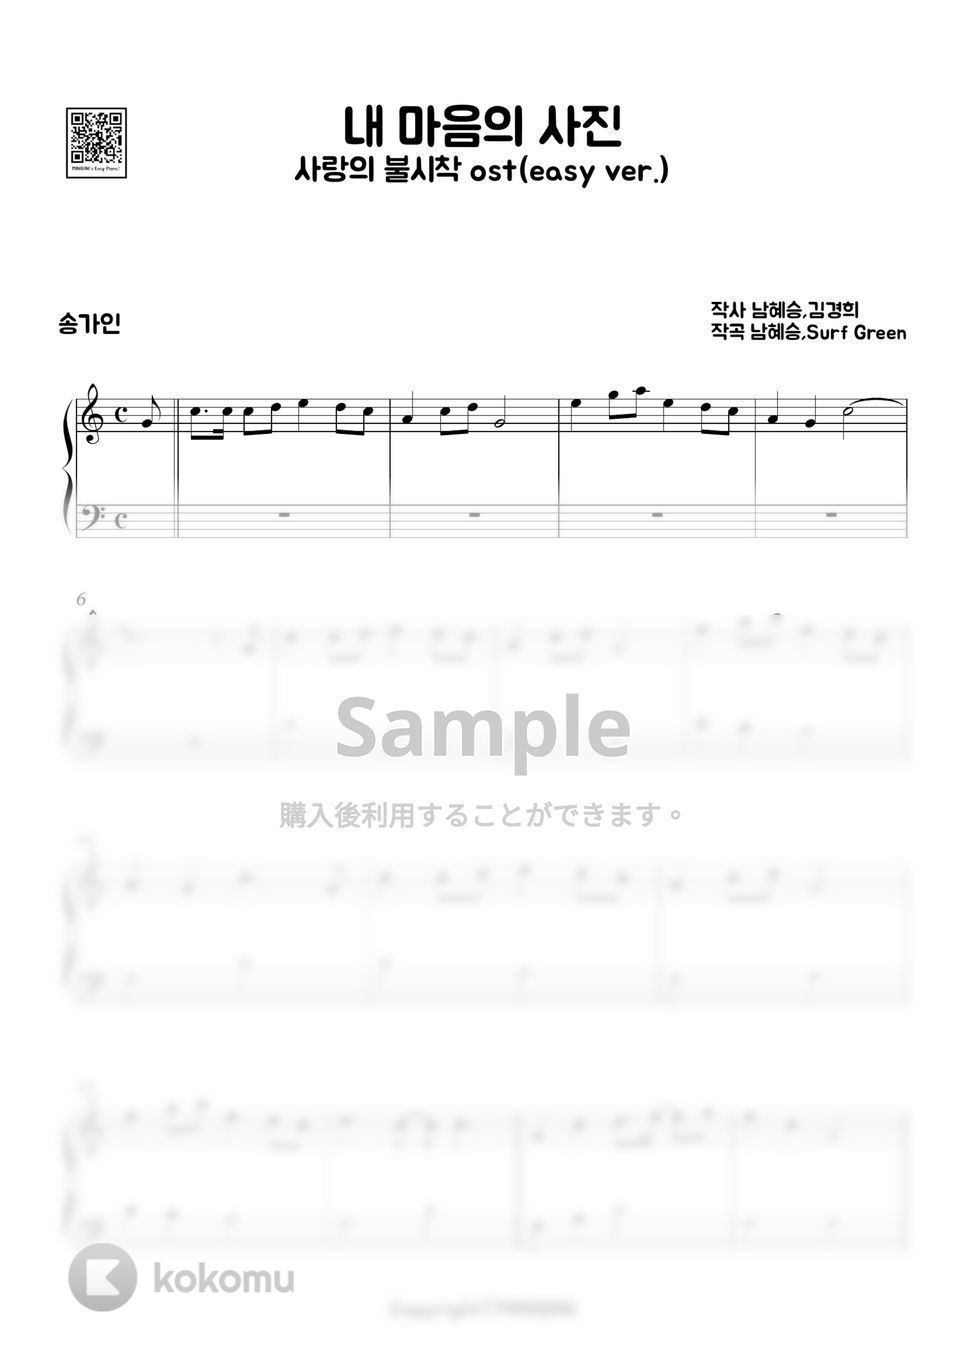 愛の不時着 OST - 心の写真 (Easy ver.) by MINIBINI